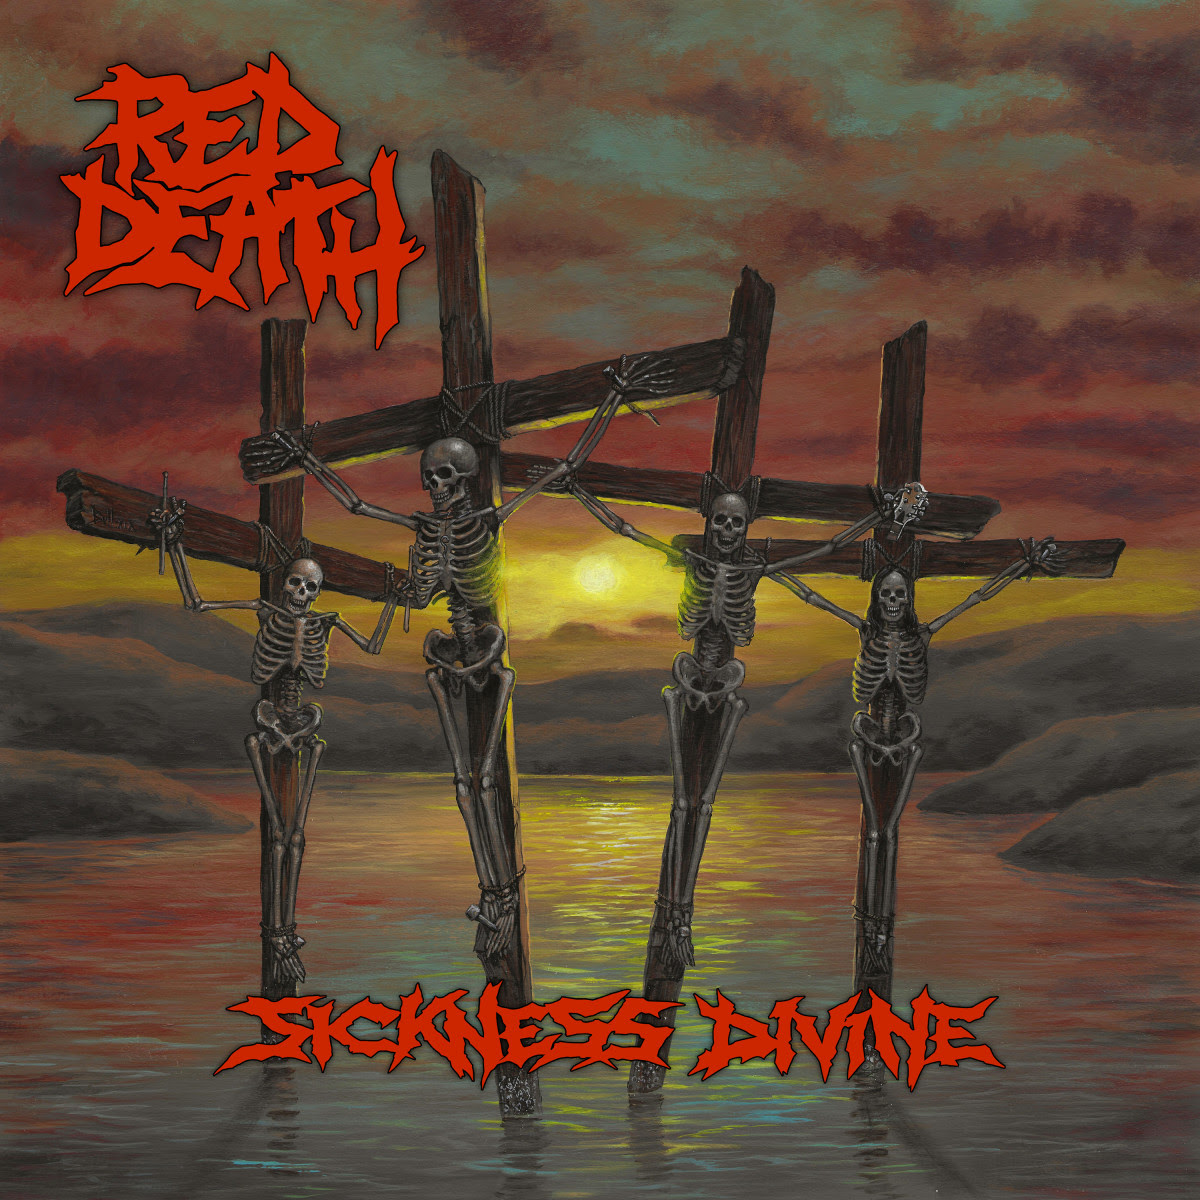 RED DEATH – ascolta il primo singolo “Face The Pain”; disponibile il preorder del nuovo album